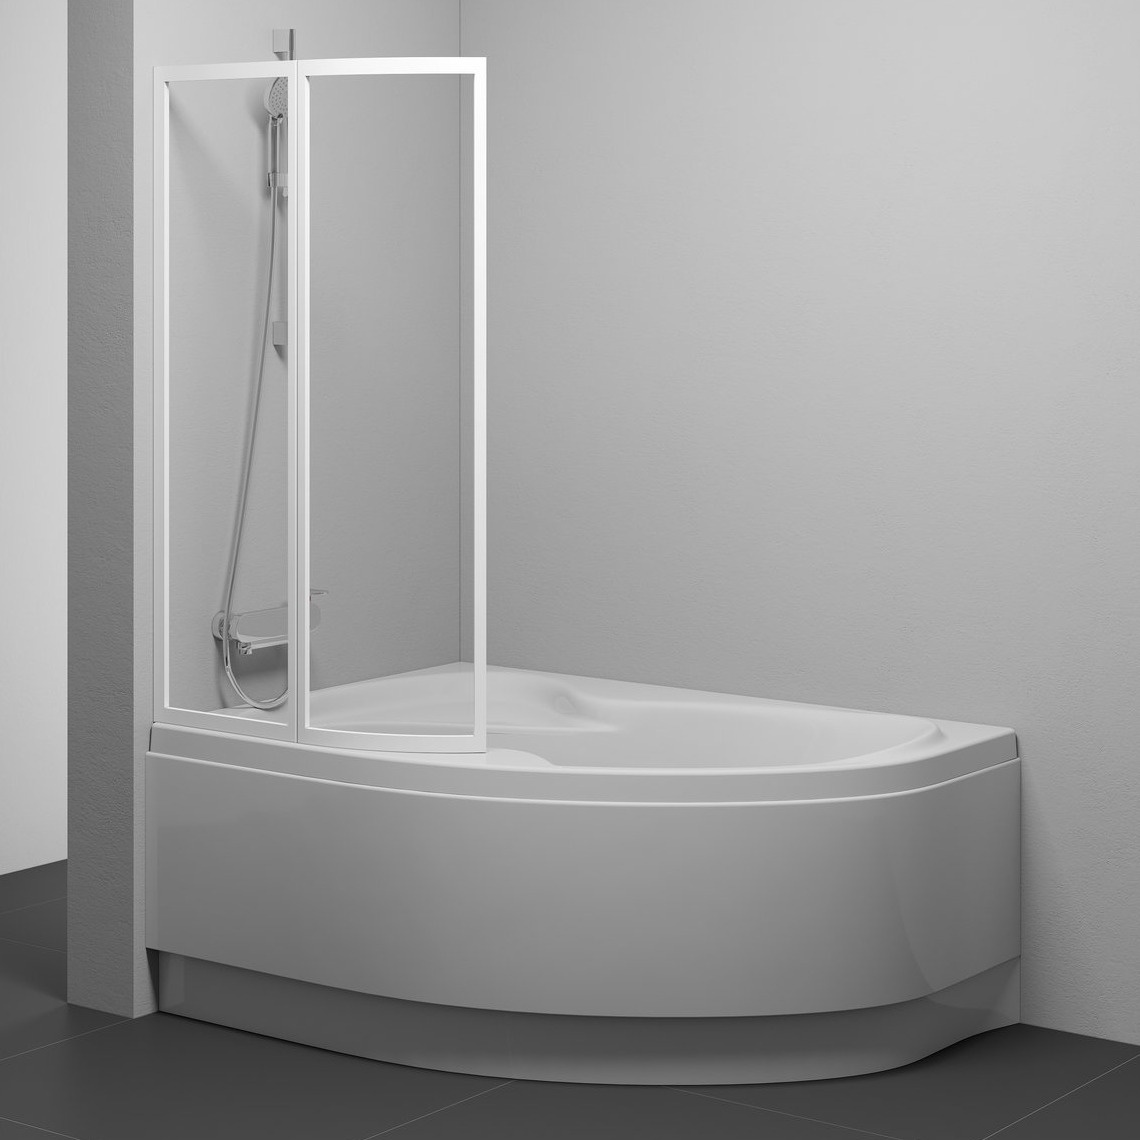 Шторка стеклянная для ванны двухсекционная распашная 150x92см RAVAK ROSA VSK2 L стекло прозрачное 3мм профиль белый 76P80100Z1